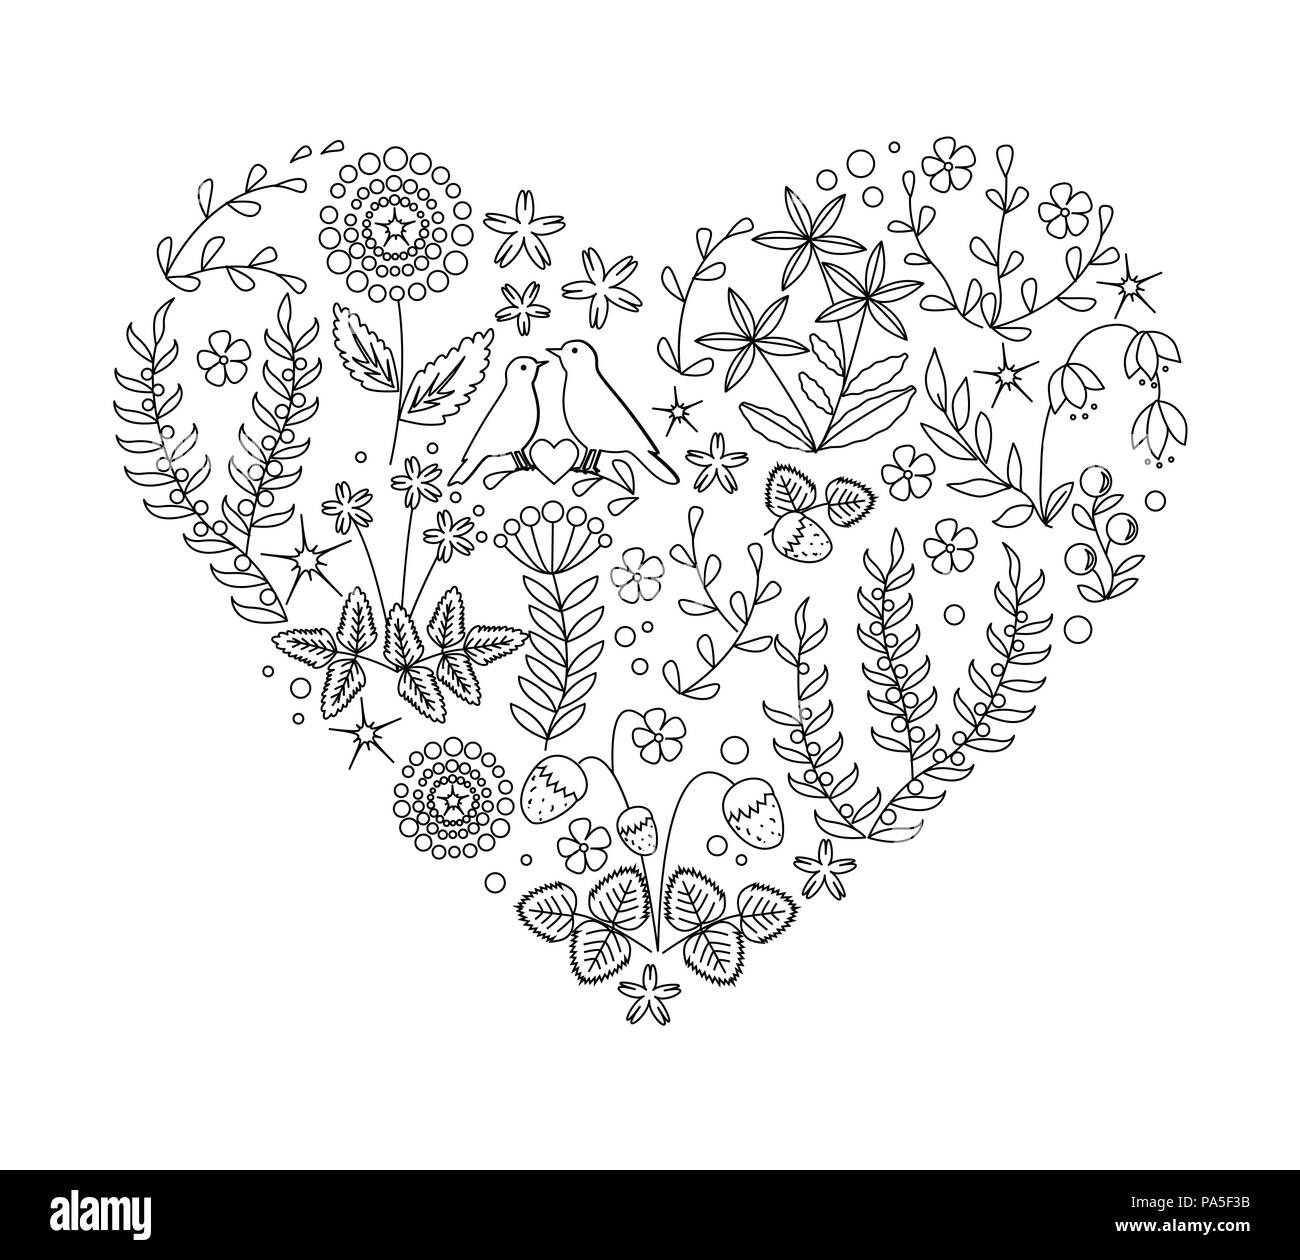 Ungefärbtes floralen Herzen mit Pflanzen und Bird's Nest. Handgezeichneten doodle Vektor für ihr Design, Hochzeit Karten, Malbuch Stock Vektor